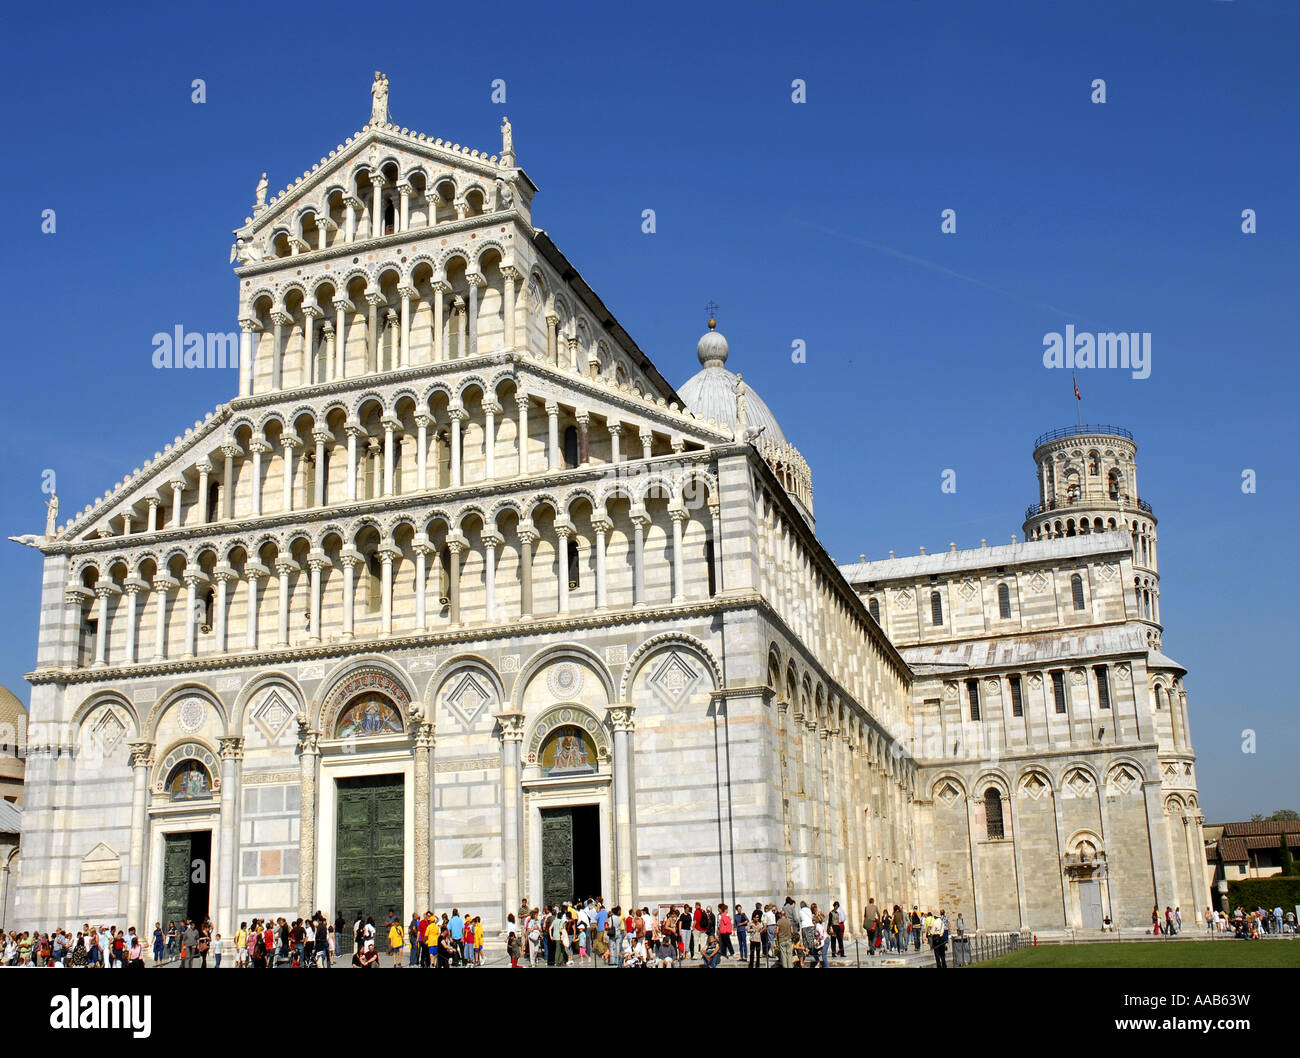 Les touristes se rendant sur le Duomo, au cœur de Campo dei Miracoli. Pise. Italie.Site du patrimoine mondial. Avril 2007 Banque D'Images